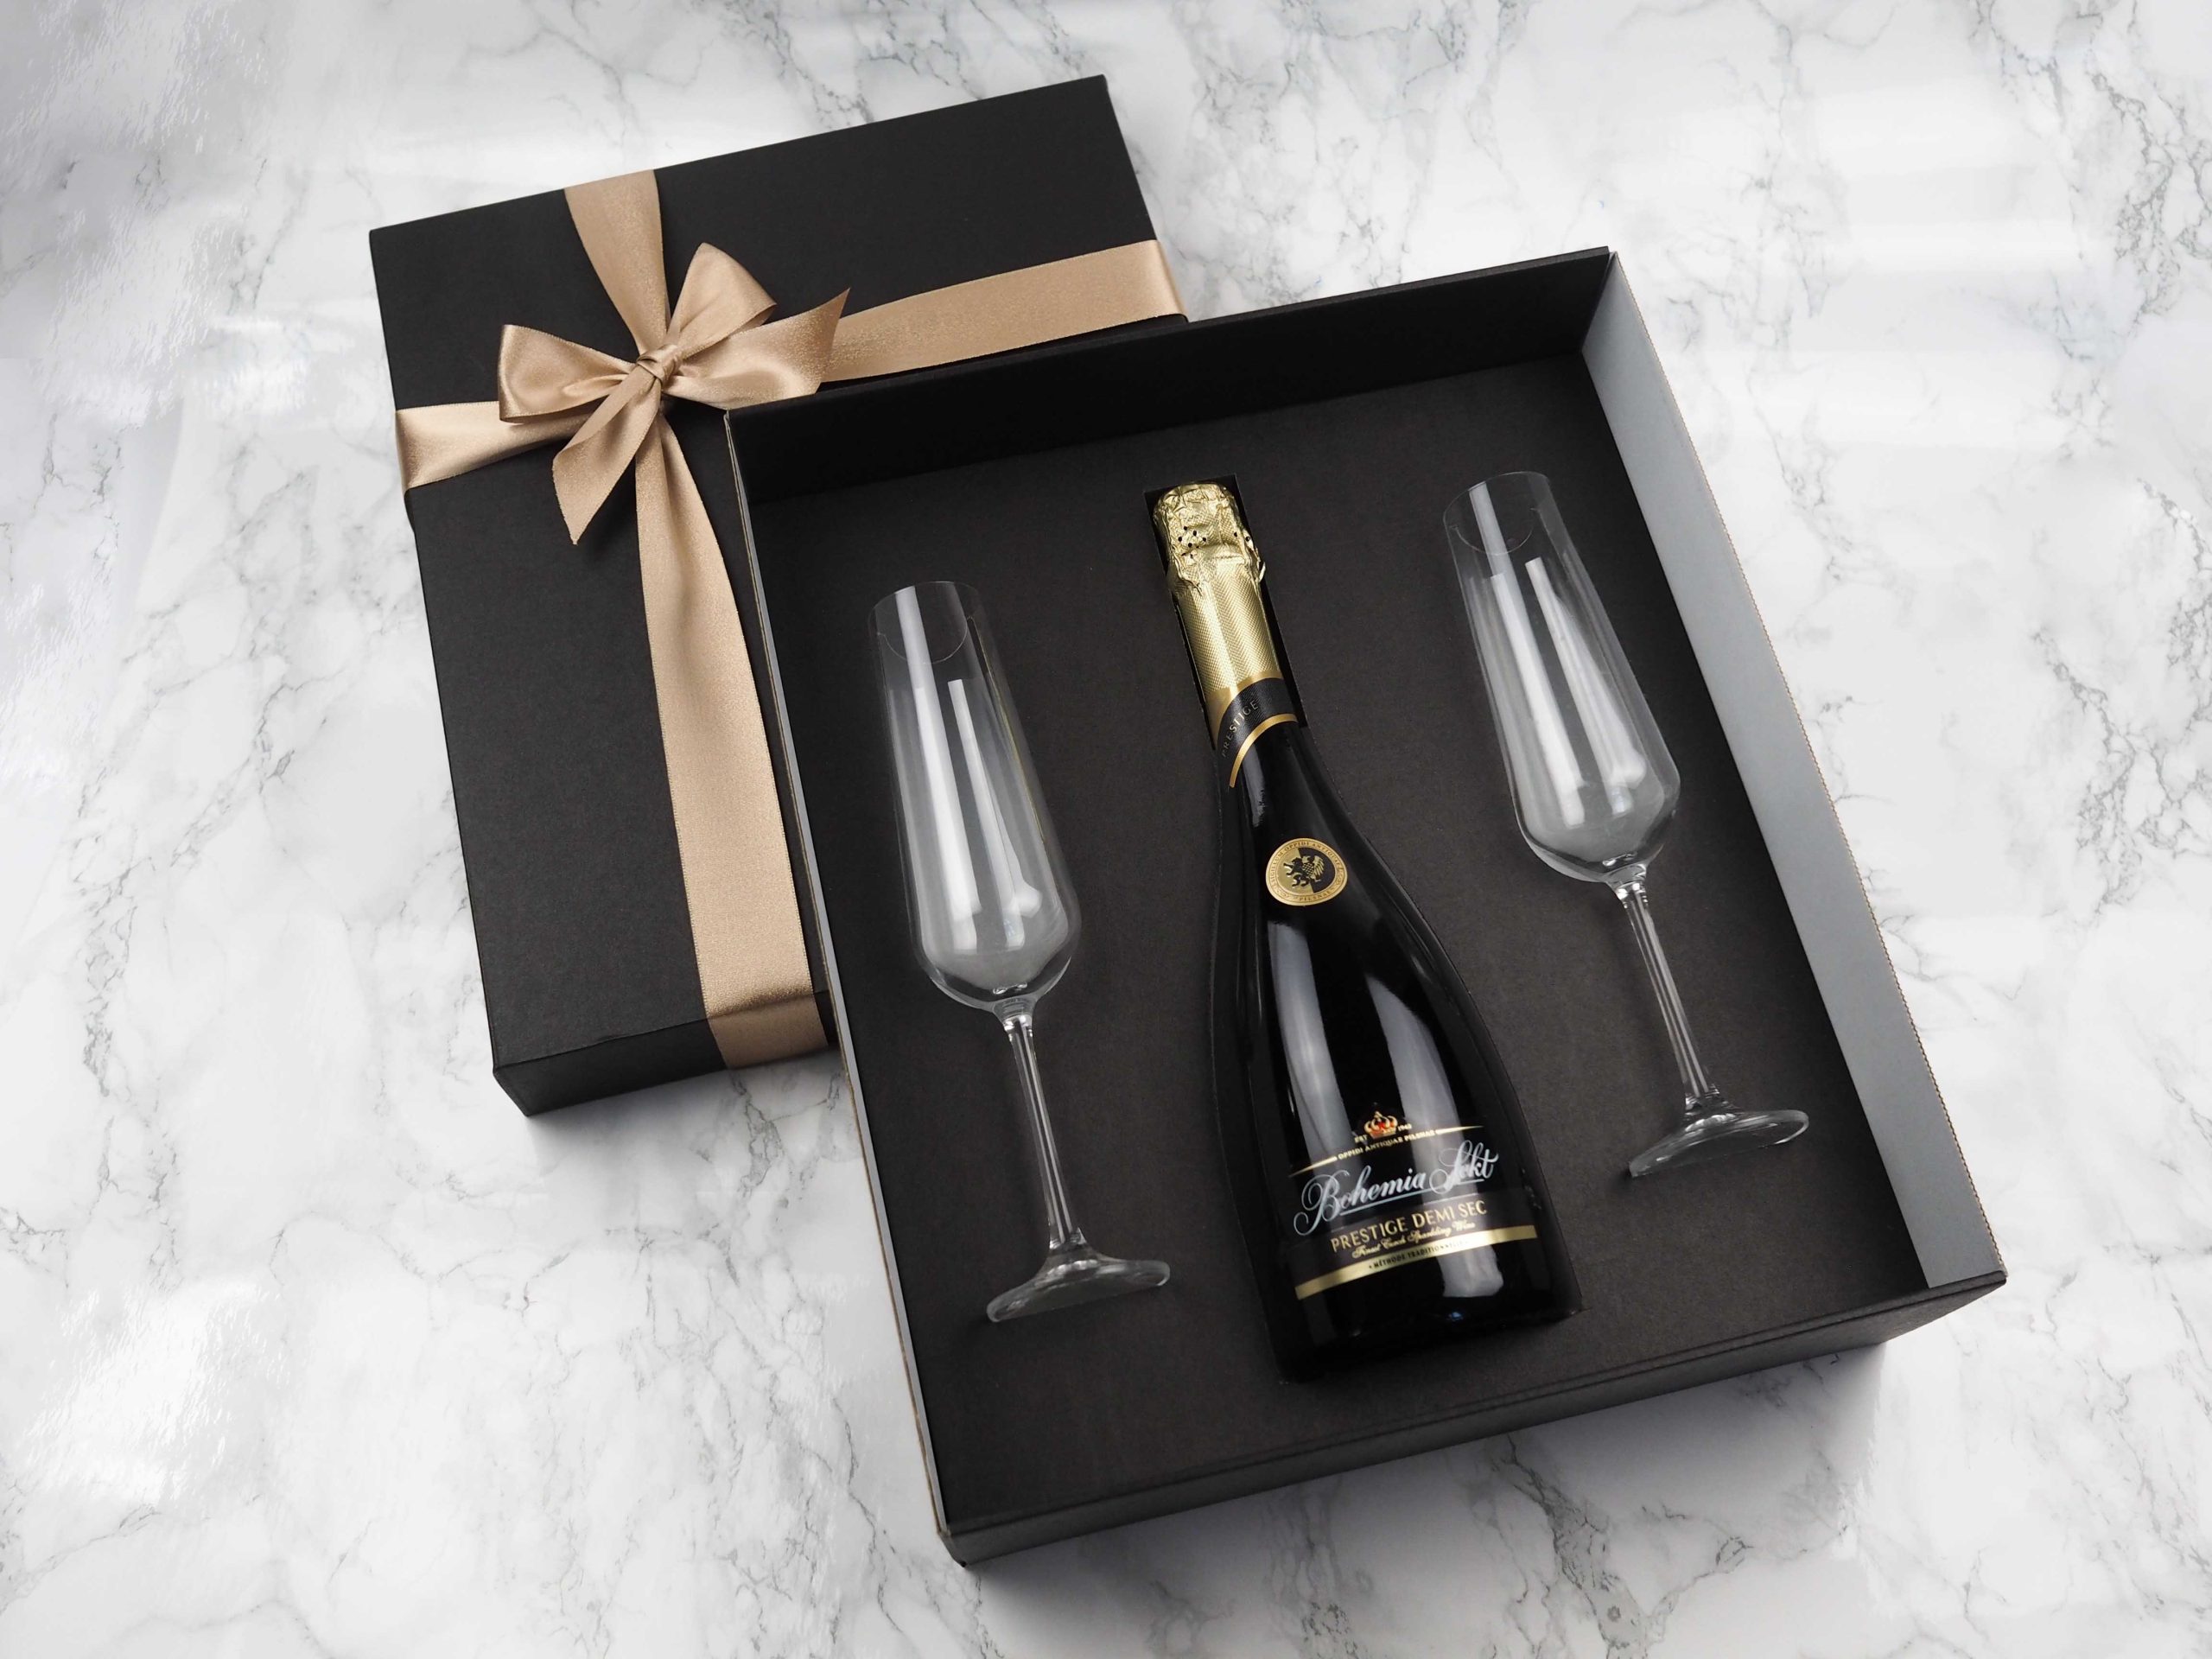 Dárkový balíček Bohemia Sekt v sobě obsahuje Bohemia Sekt Prestige a dvě skleničky na šampaňské, na které lze přidat i gravírování loga.  Darujte luxusní balíček, který potěší každého obdarovaného.